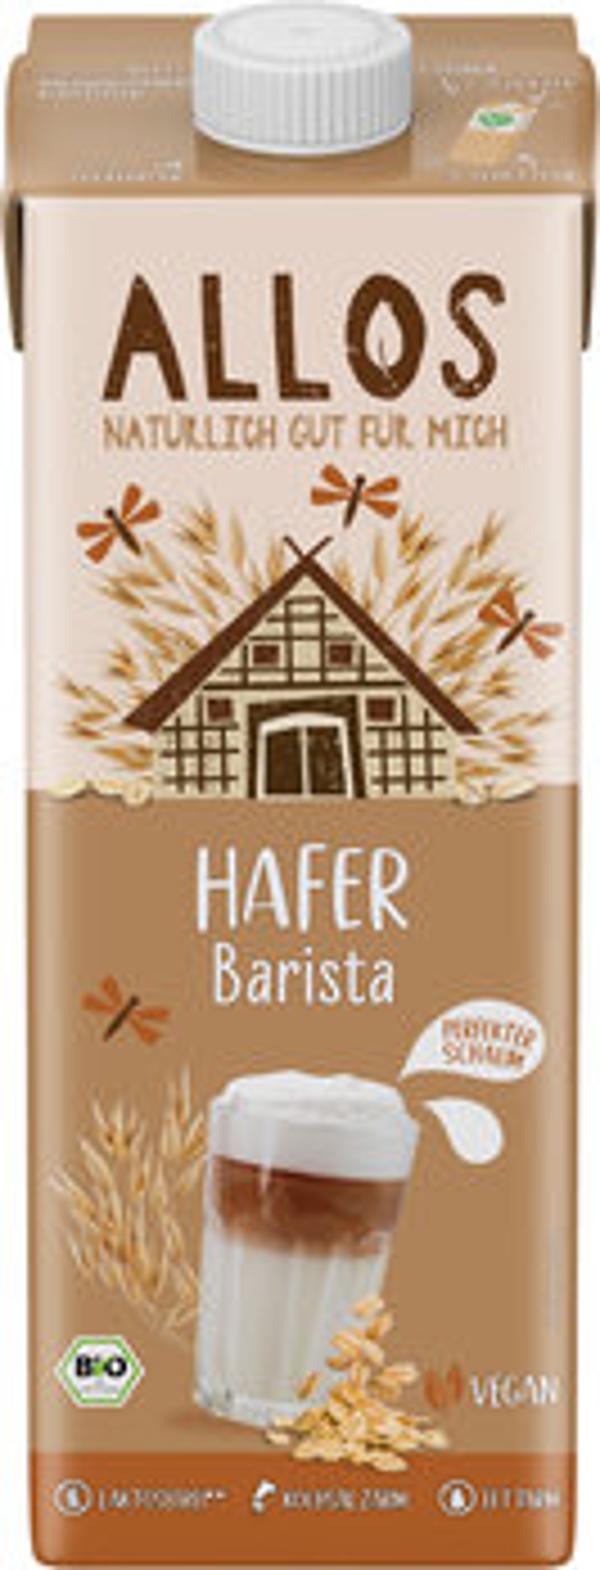 Produktfoto zu Hafer Barista Drink, 1 l